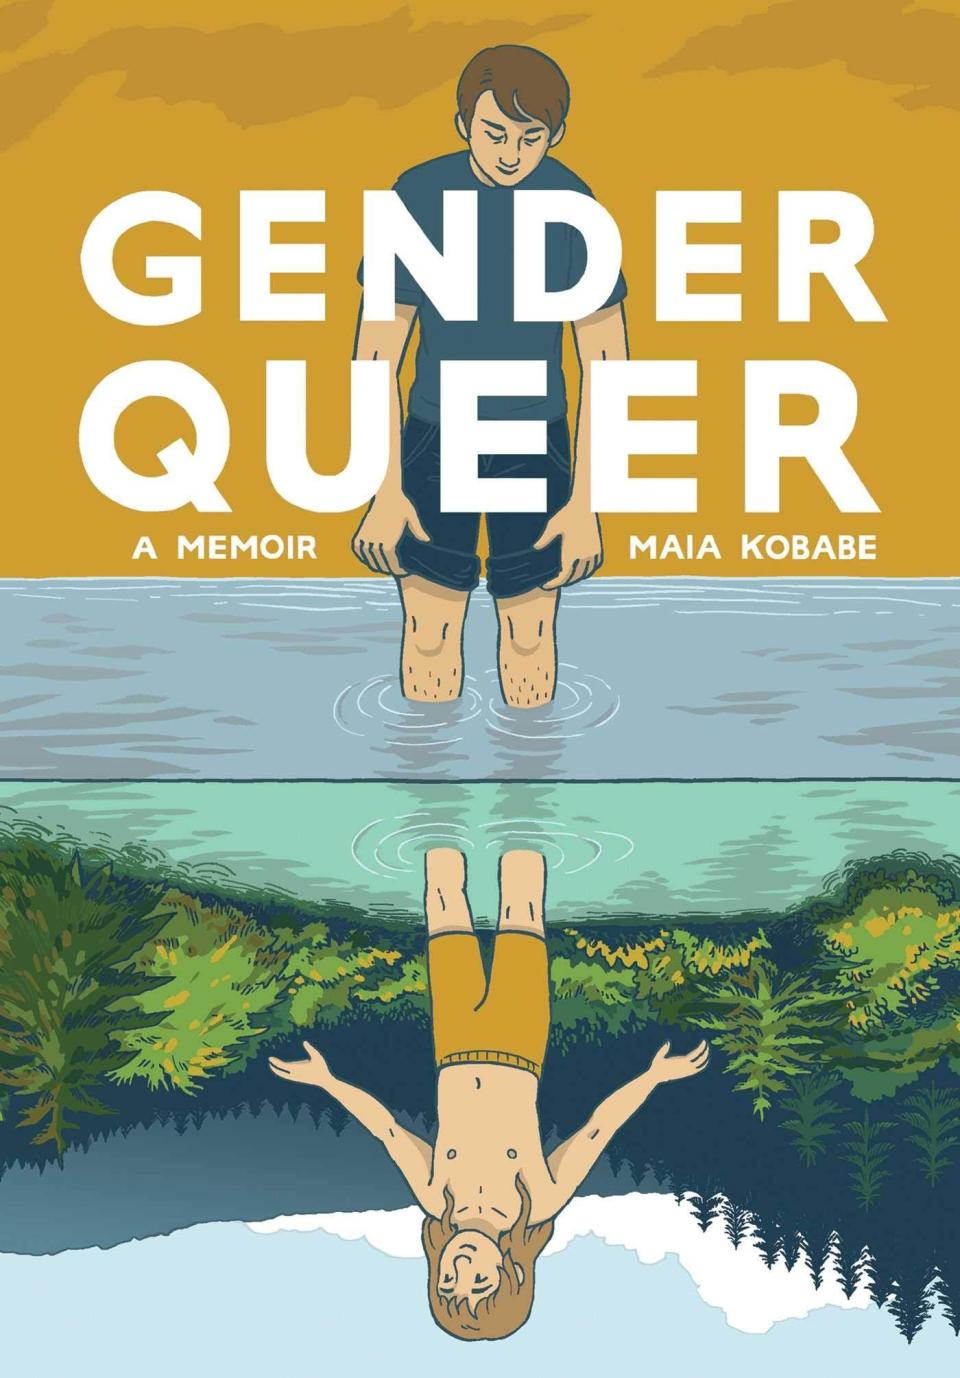 "Gender Queer: A Memoir" by Maia Kobabe